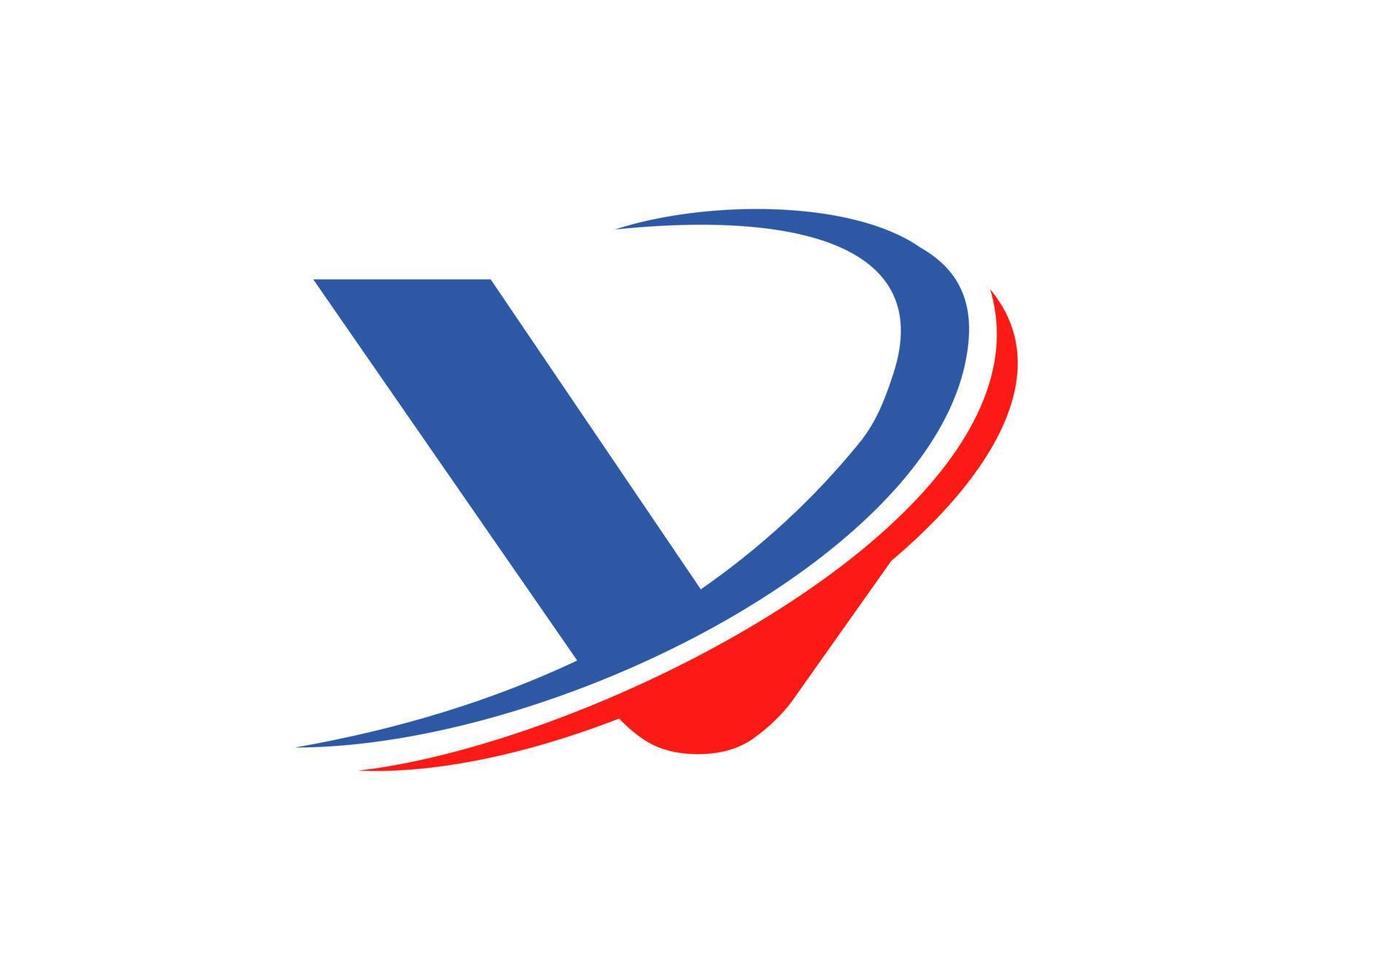 plantilla de logotipo de empresa de letra v. diseño inicial del logotipo v para bienes raíces, finanzas, marketing, gestión, construcción, etc. vector